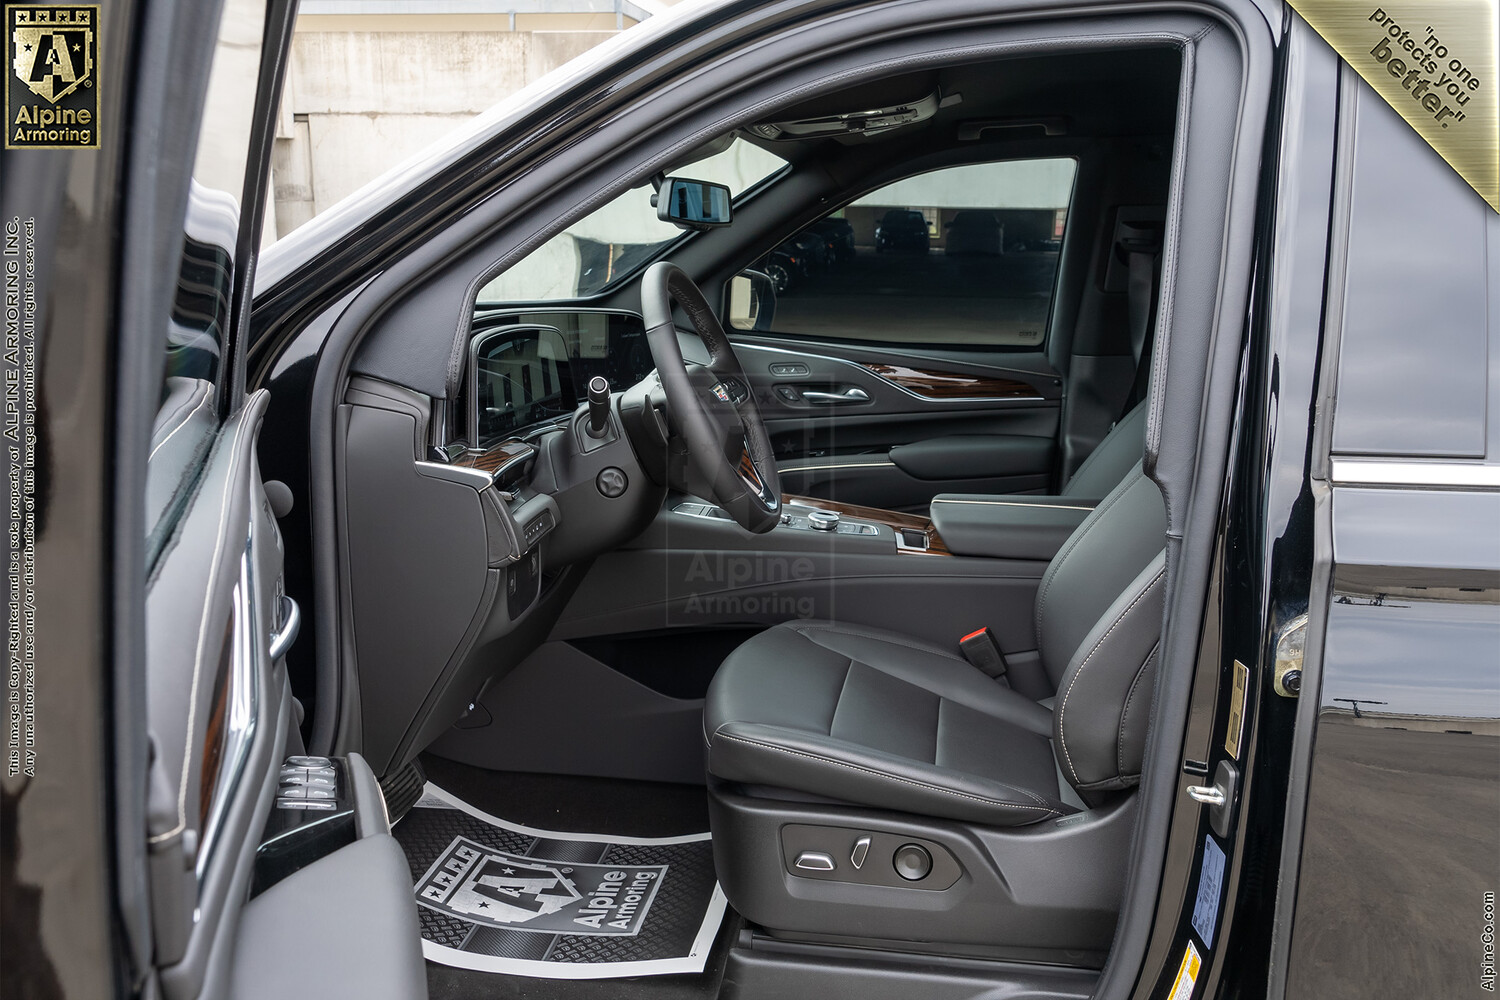 Inventory SUVS Cadillac Escalade ESV VIN:9869 Exterior Interior Images